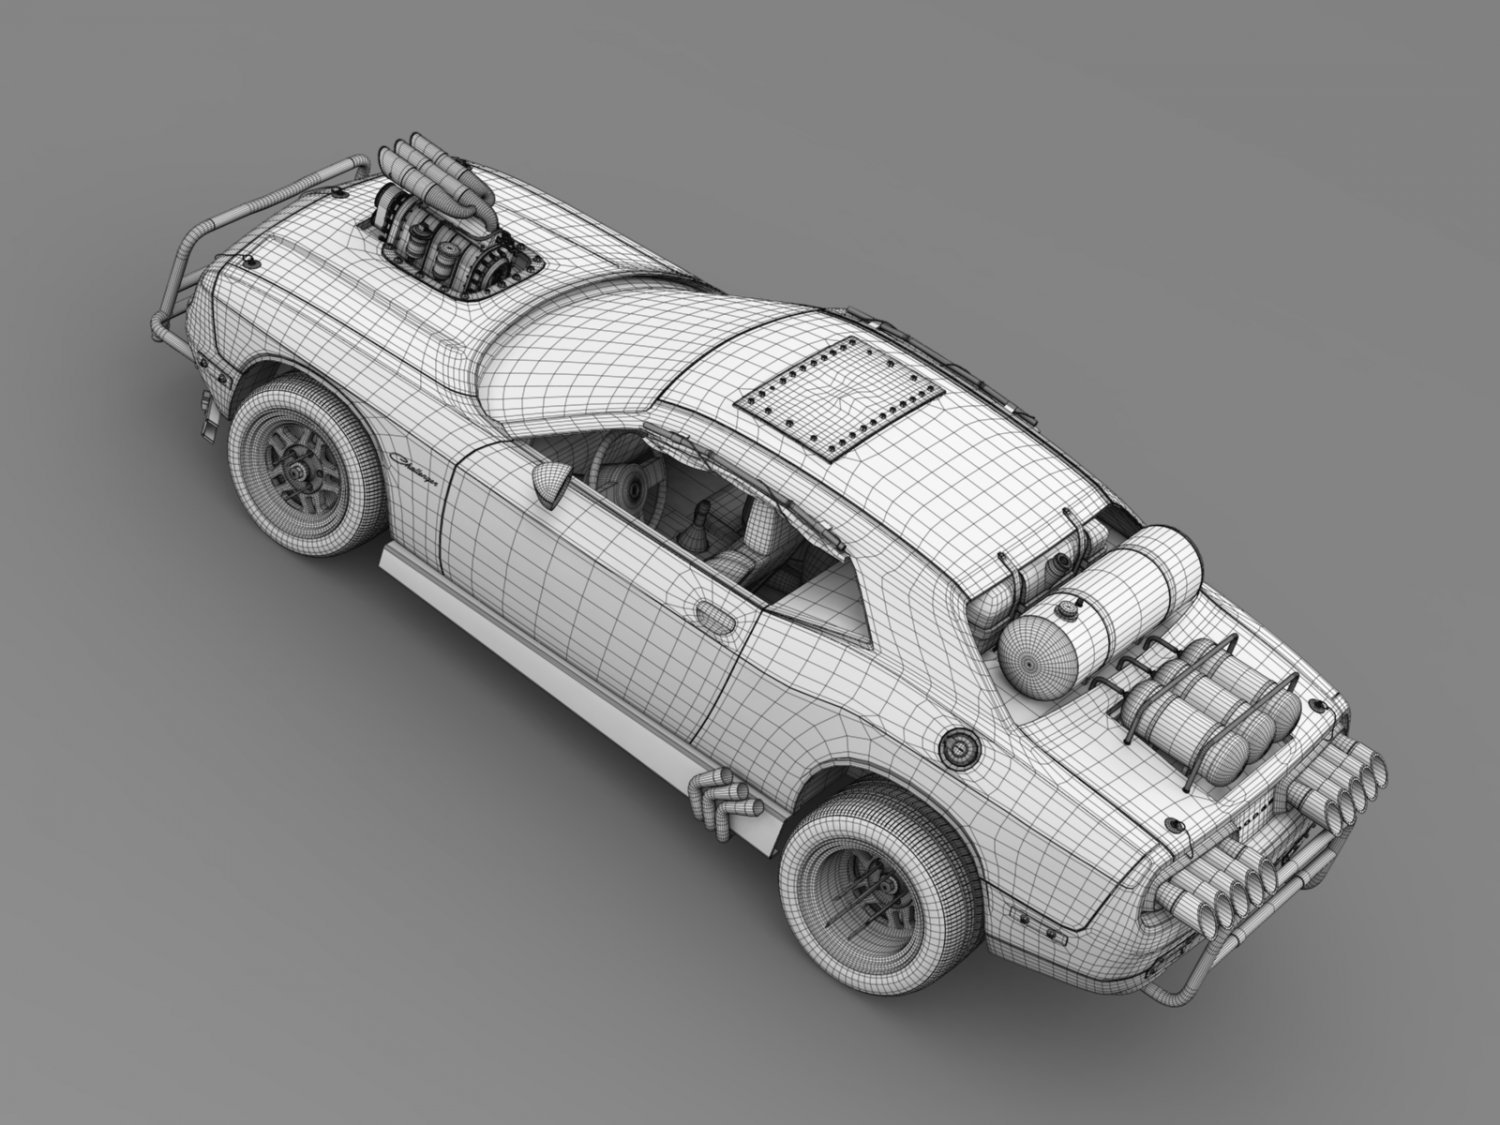 Референс автомобиля для 3ds Max